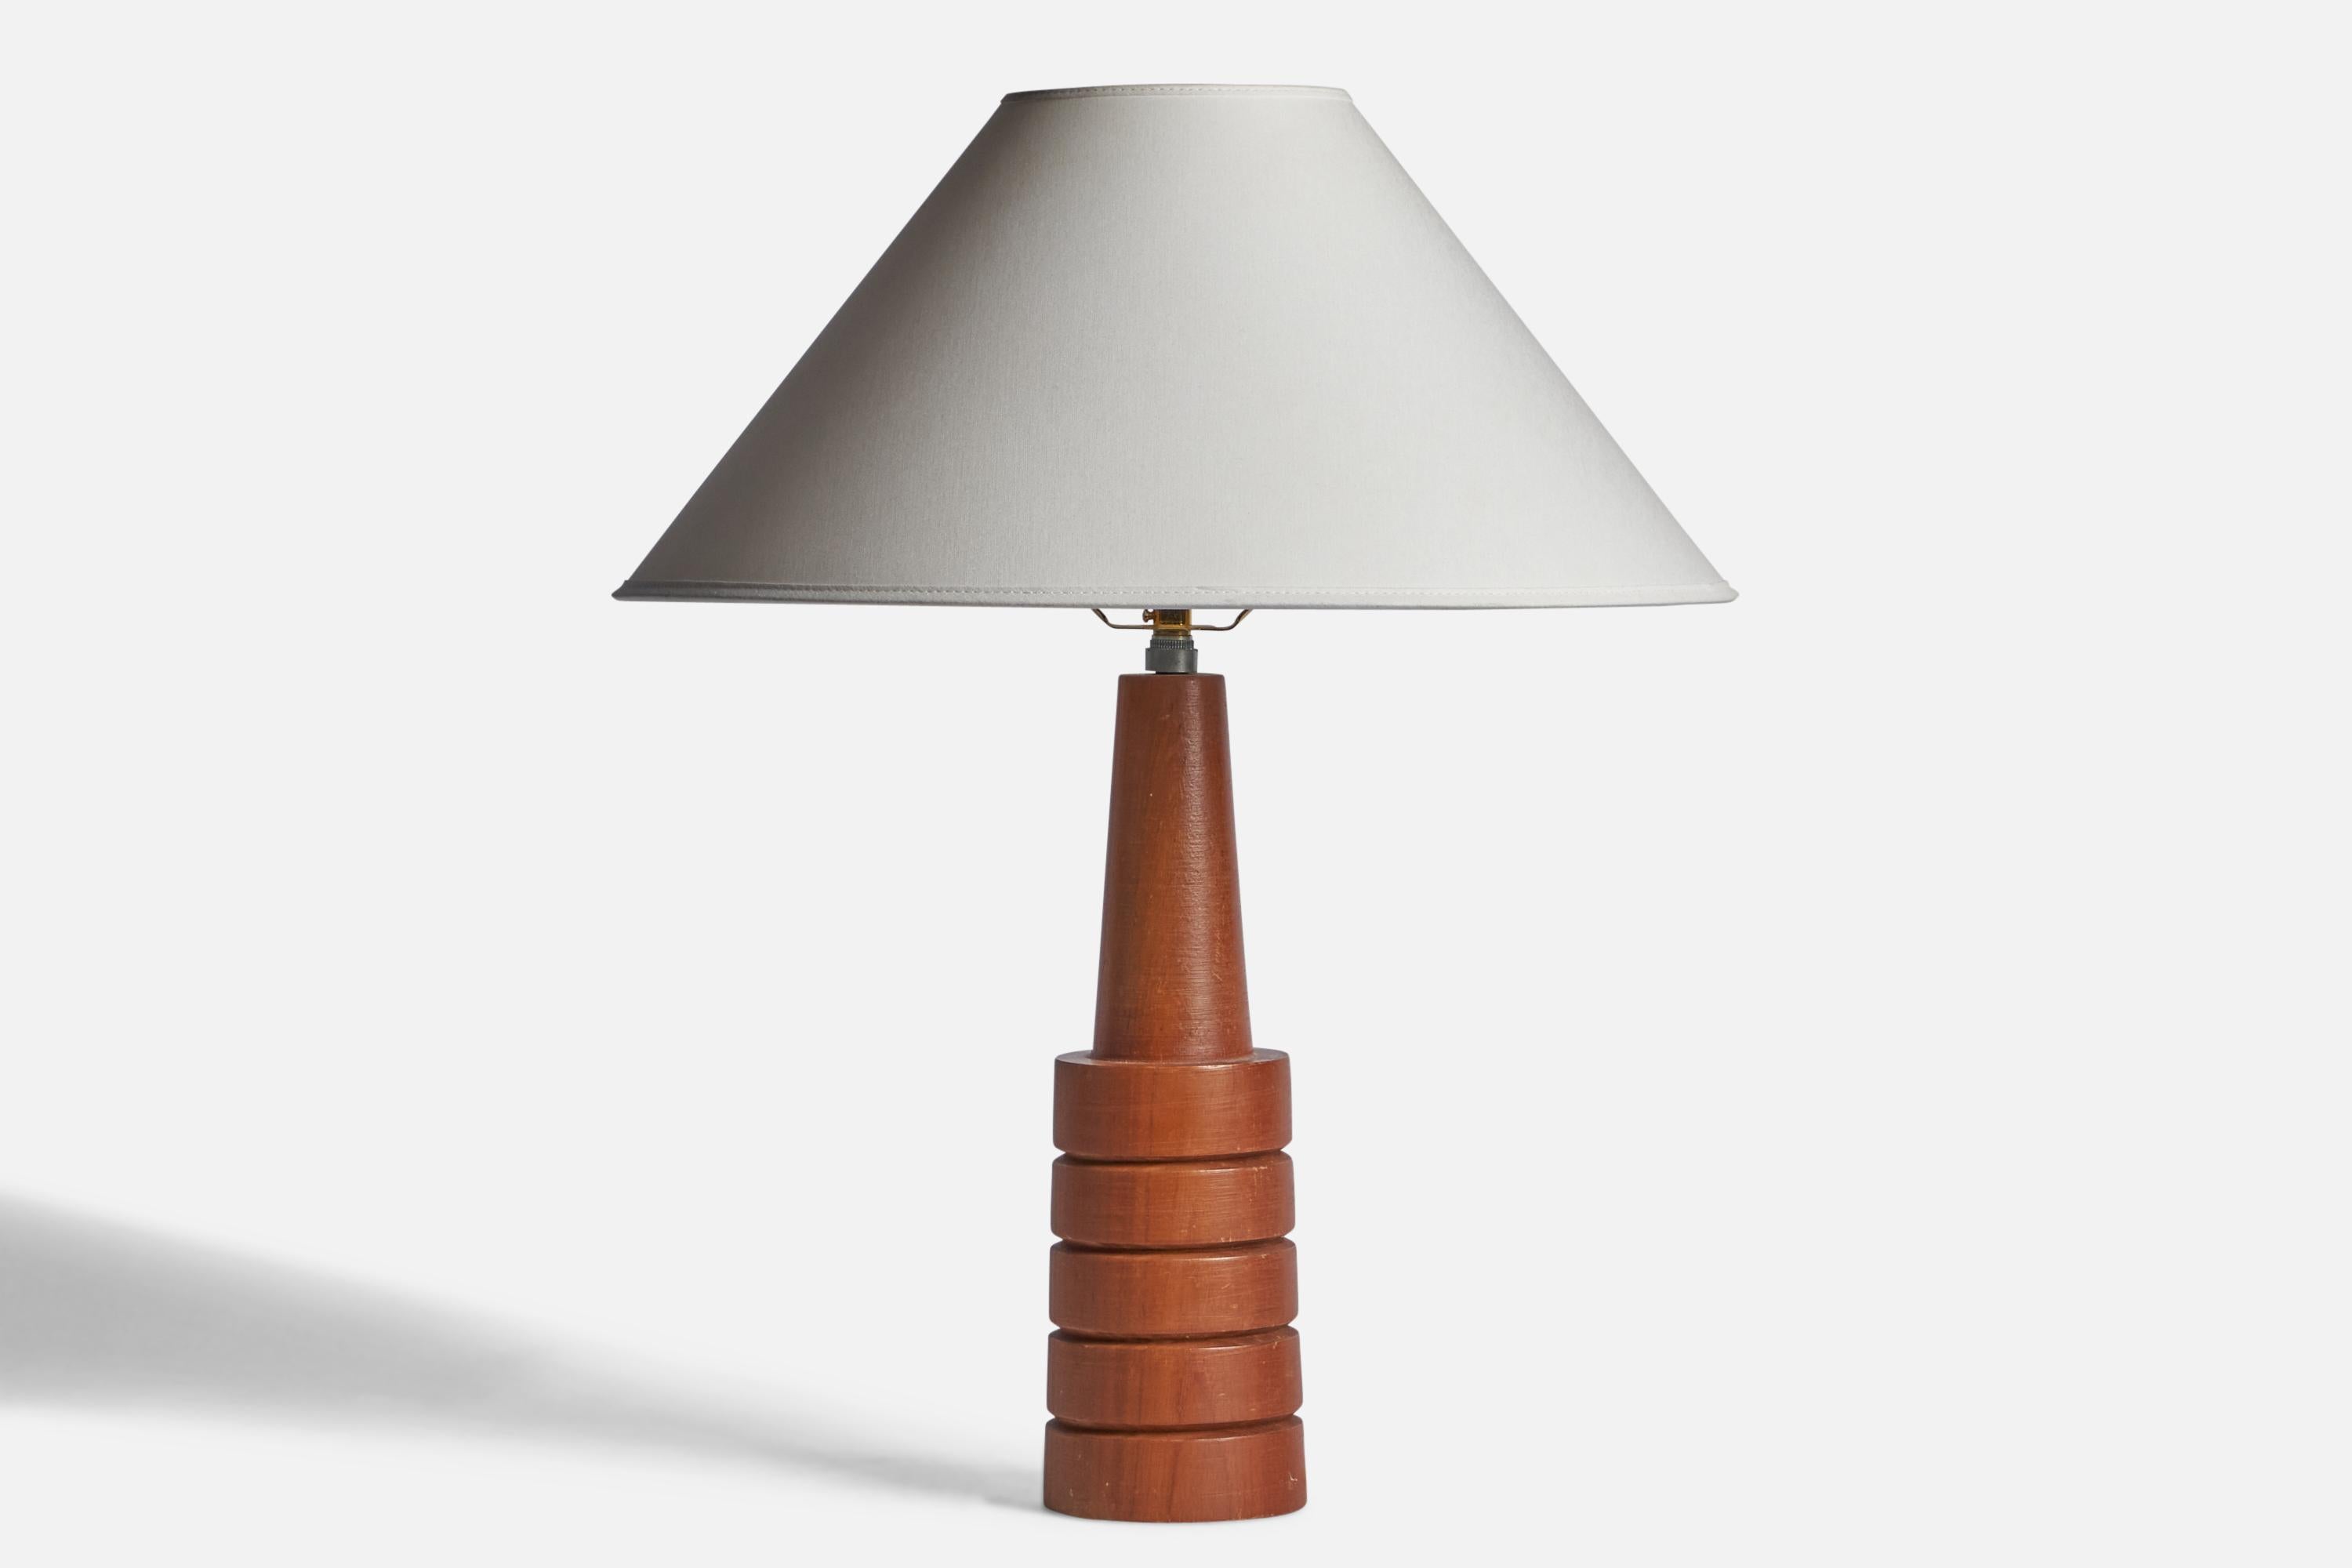 Tischlampe aus Teakholz, entworfen und hergestellt in den USA, ca. 1960er Jahre.

Abmessungen der Lampe (Zoll): 15,25